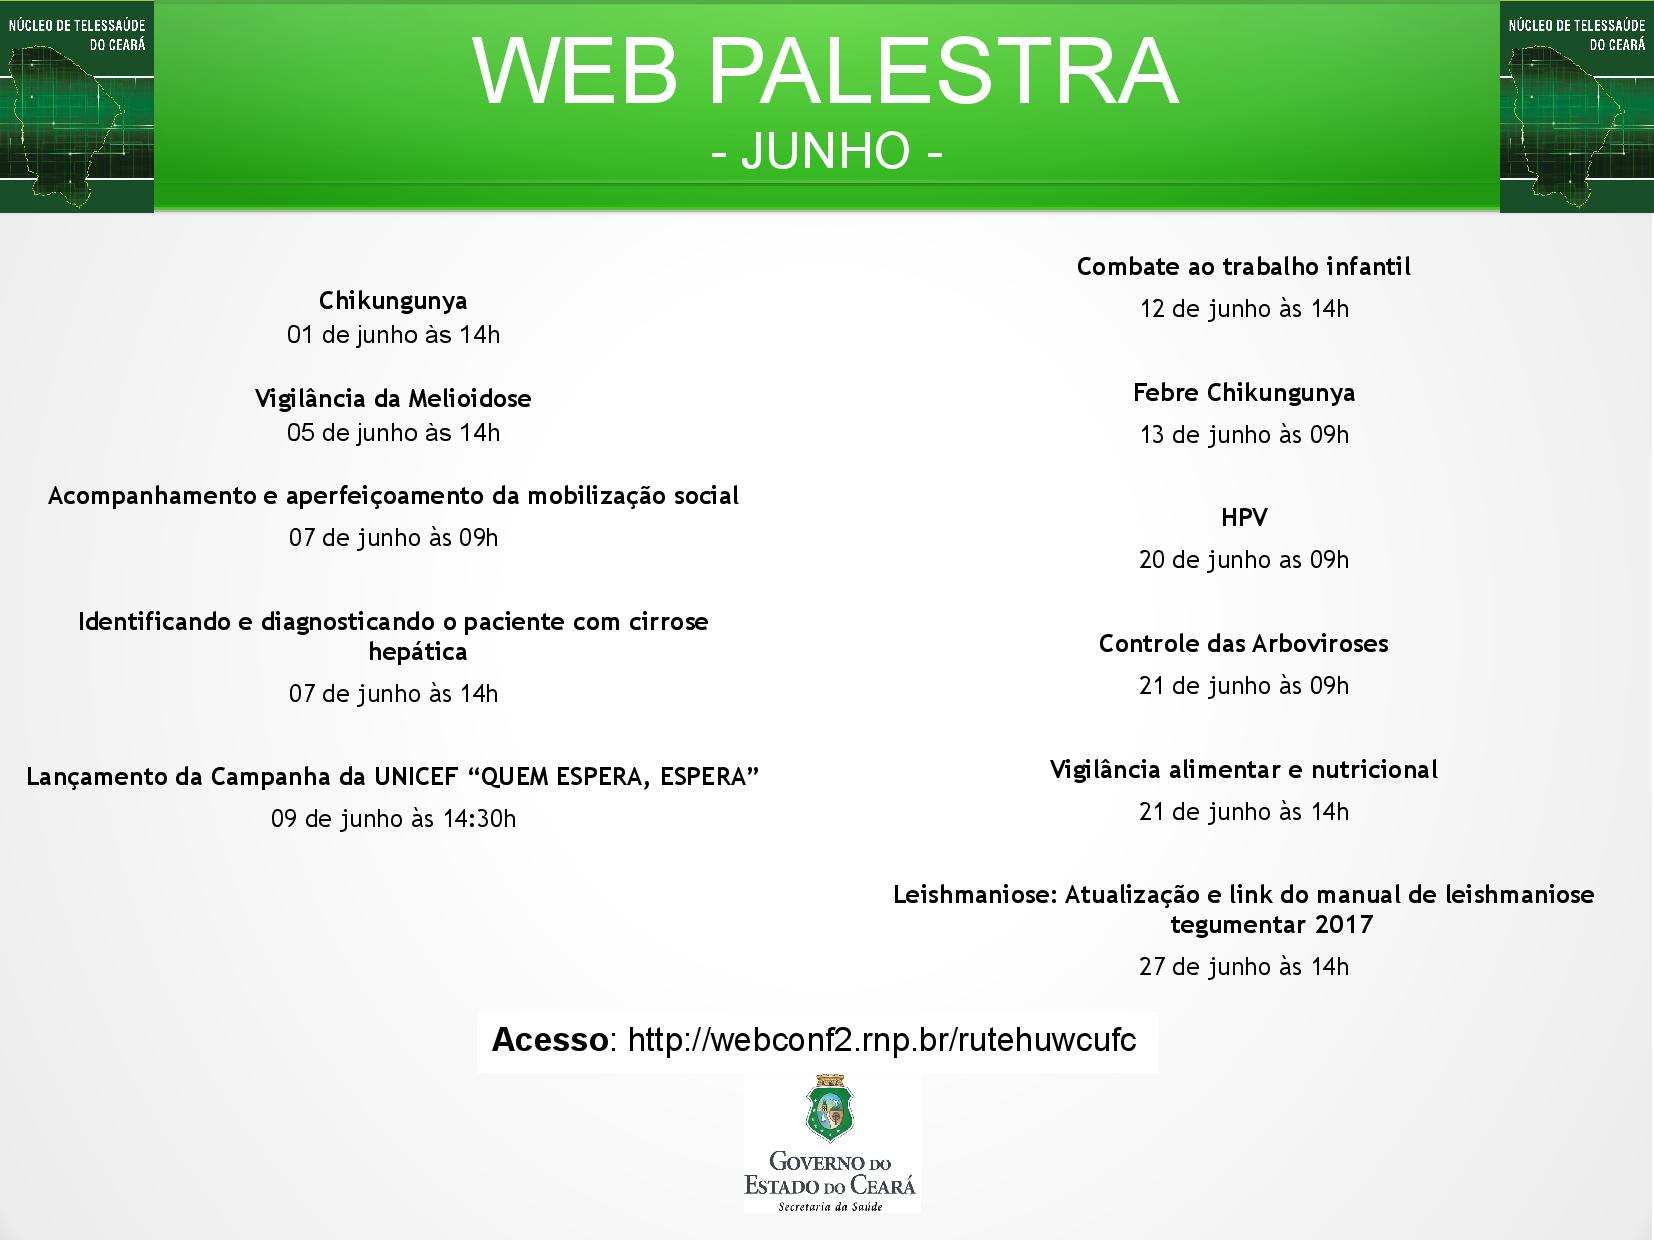 Anexo Calendário-webpalestras-Jun2017.jpg